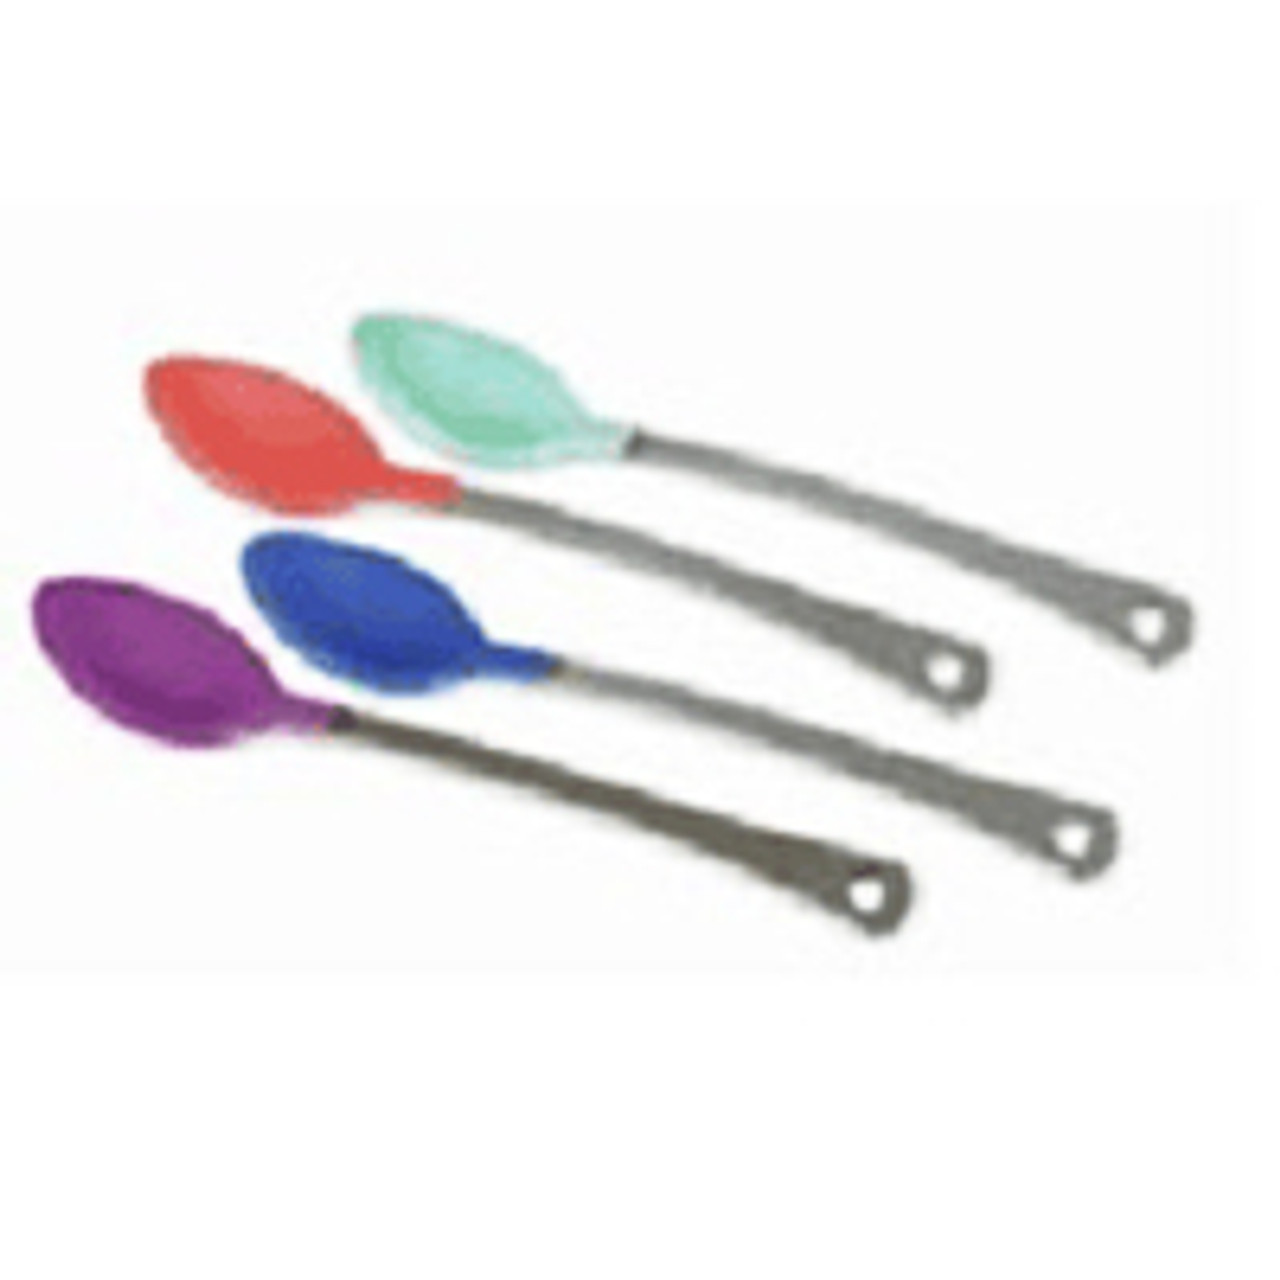 Munchkin® Soft-Tip Infant Spoons, 6 pk